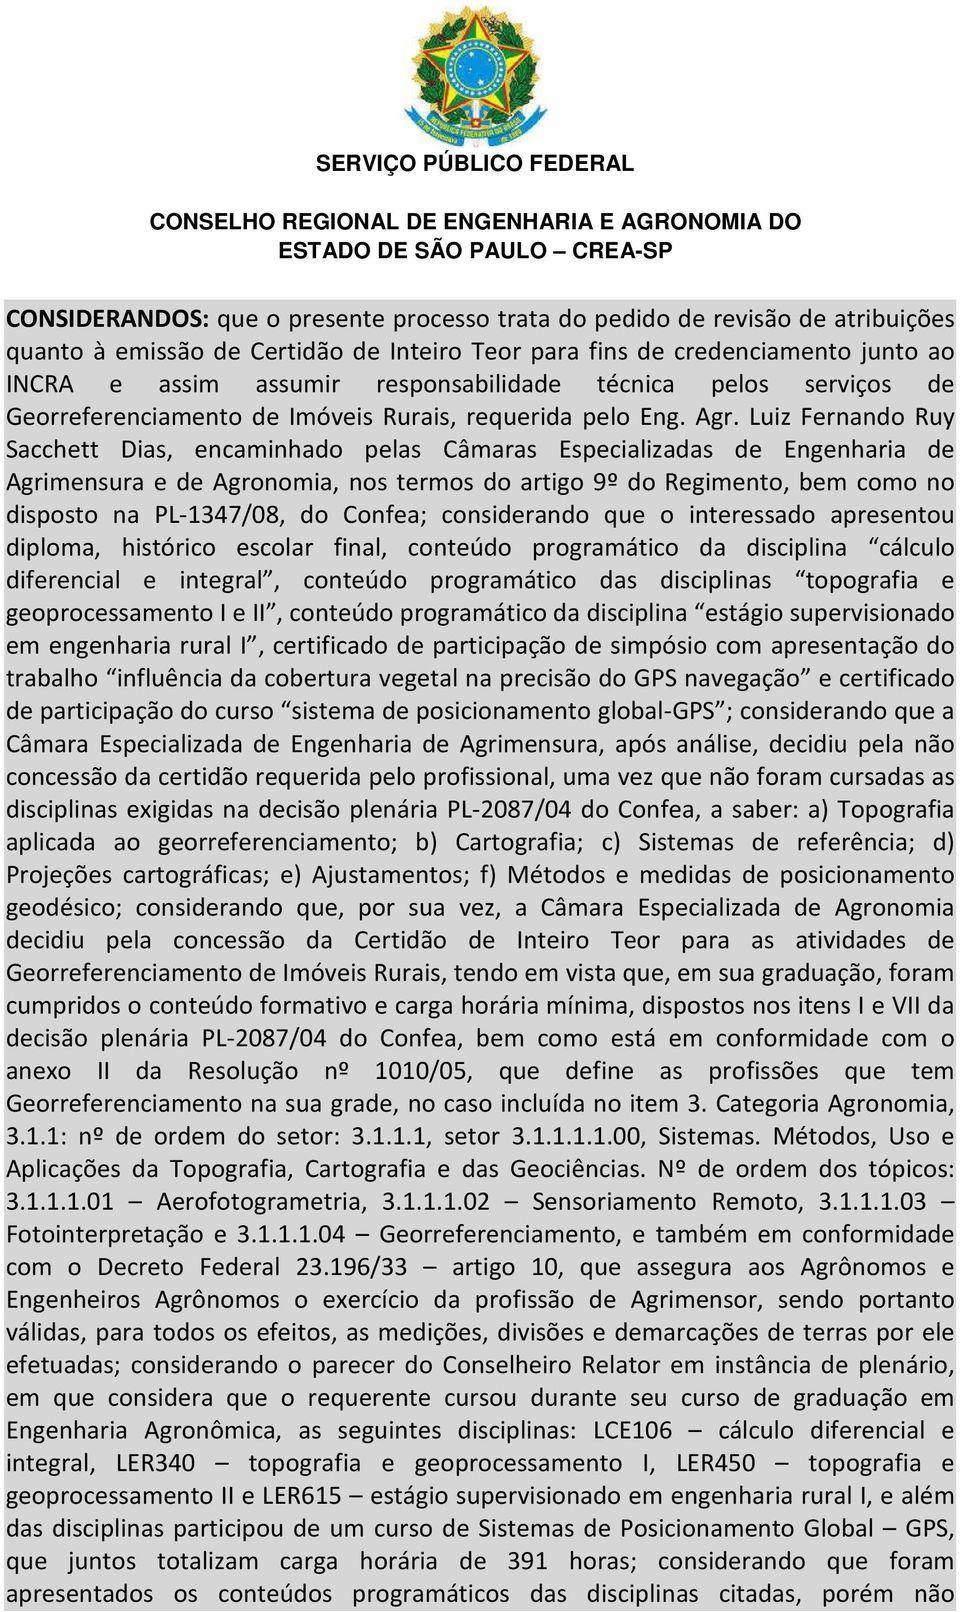 Luiz Fernando Ruy Sacchett Dias, encaminhado pelas Câmaras Especializadas de Engenharia de Agrimensura e de Agronomia, nos termos do artigo 9º do Regimento, bem como no disposto na PL-1347/08, do